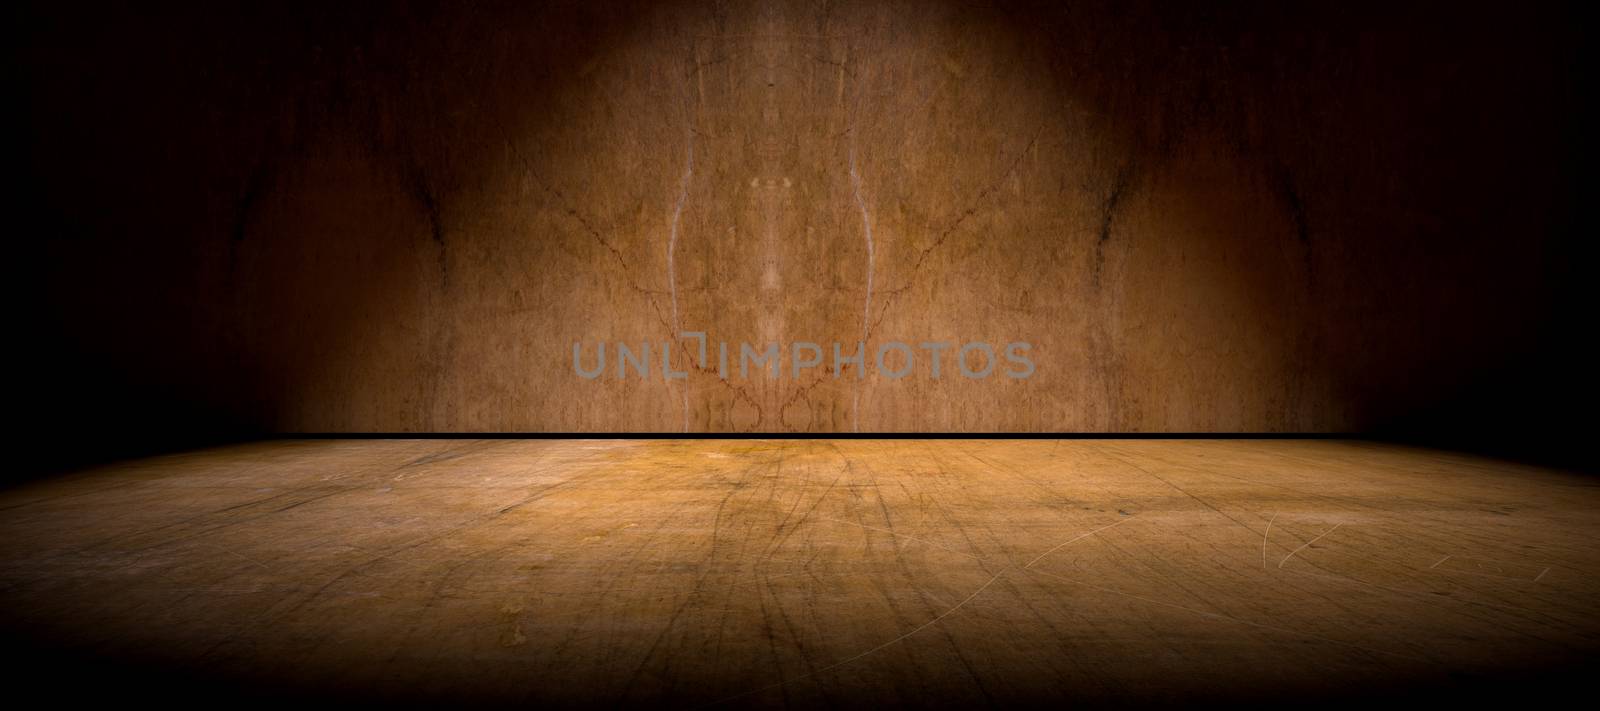 Wall and floor backdrop by carloscastilla